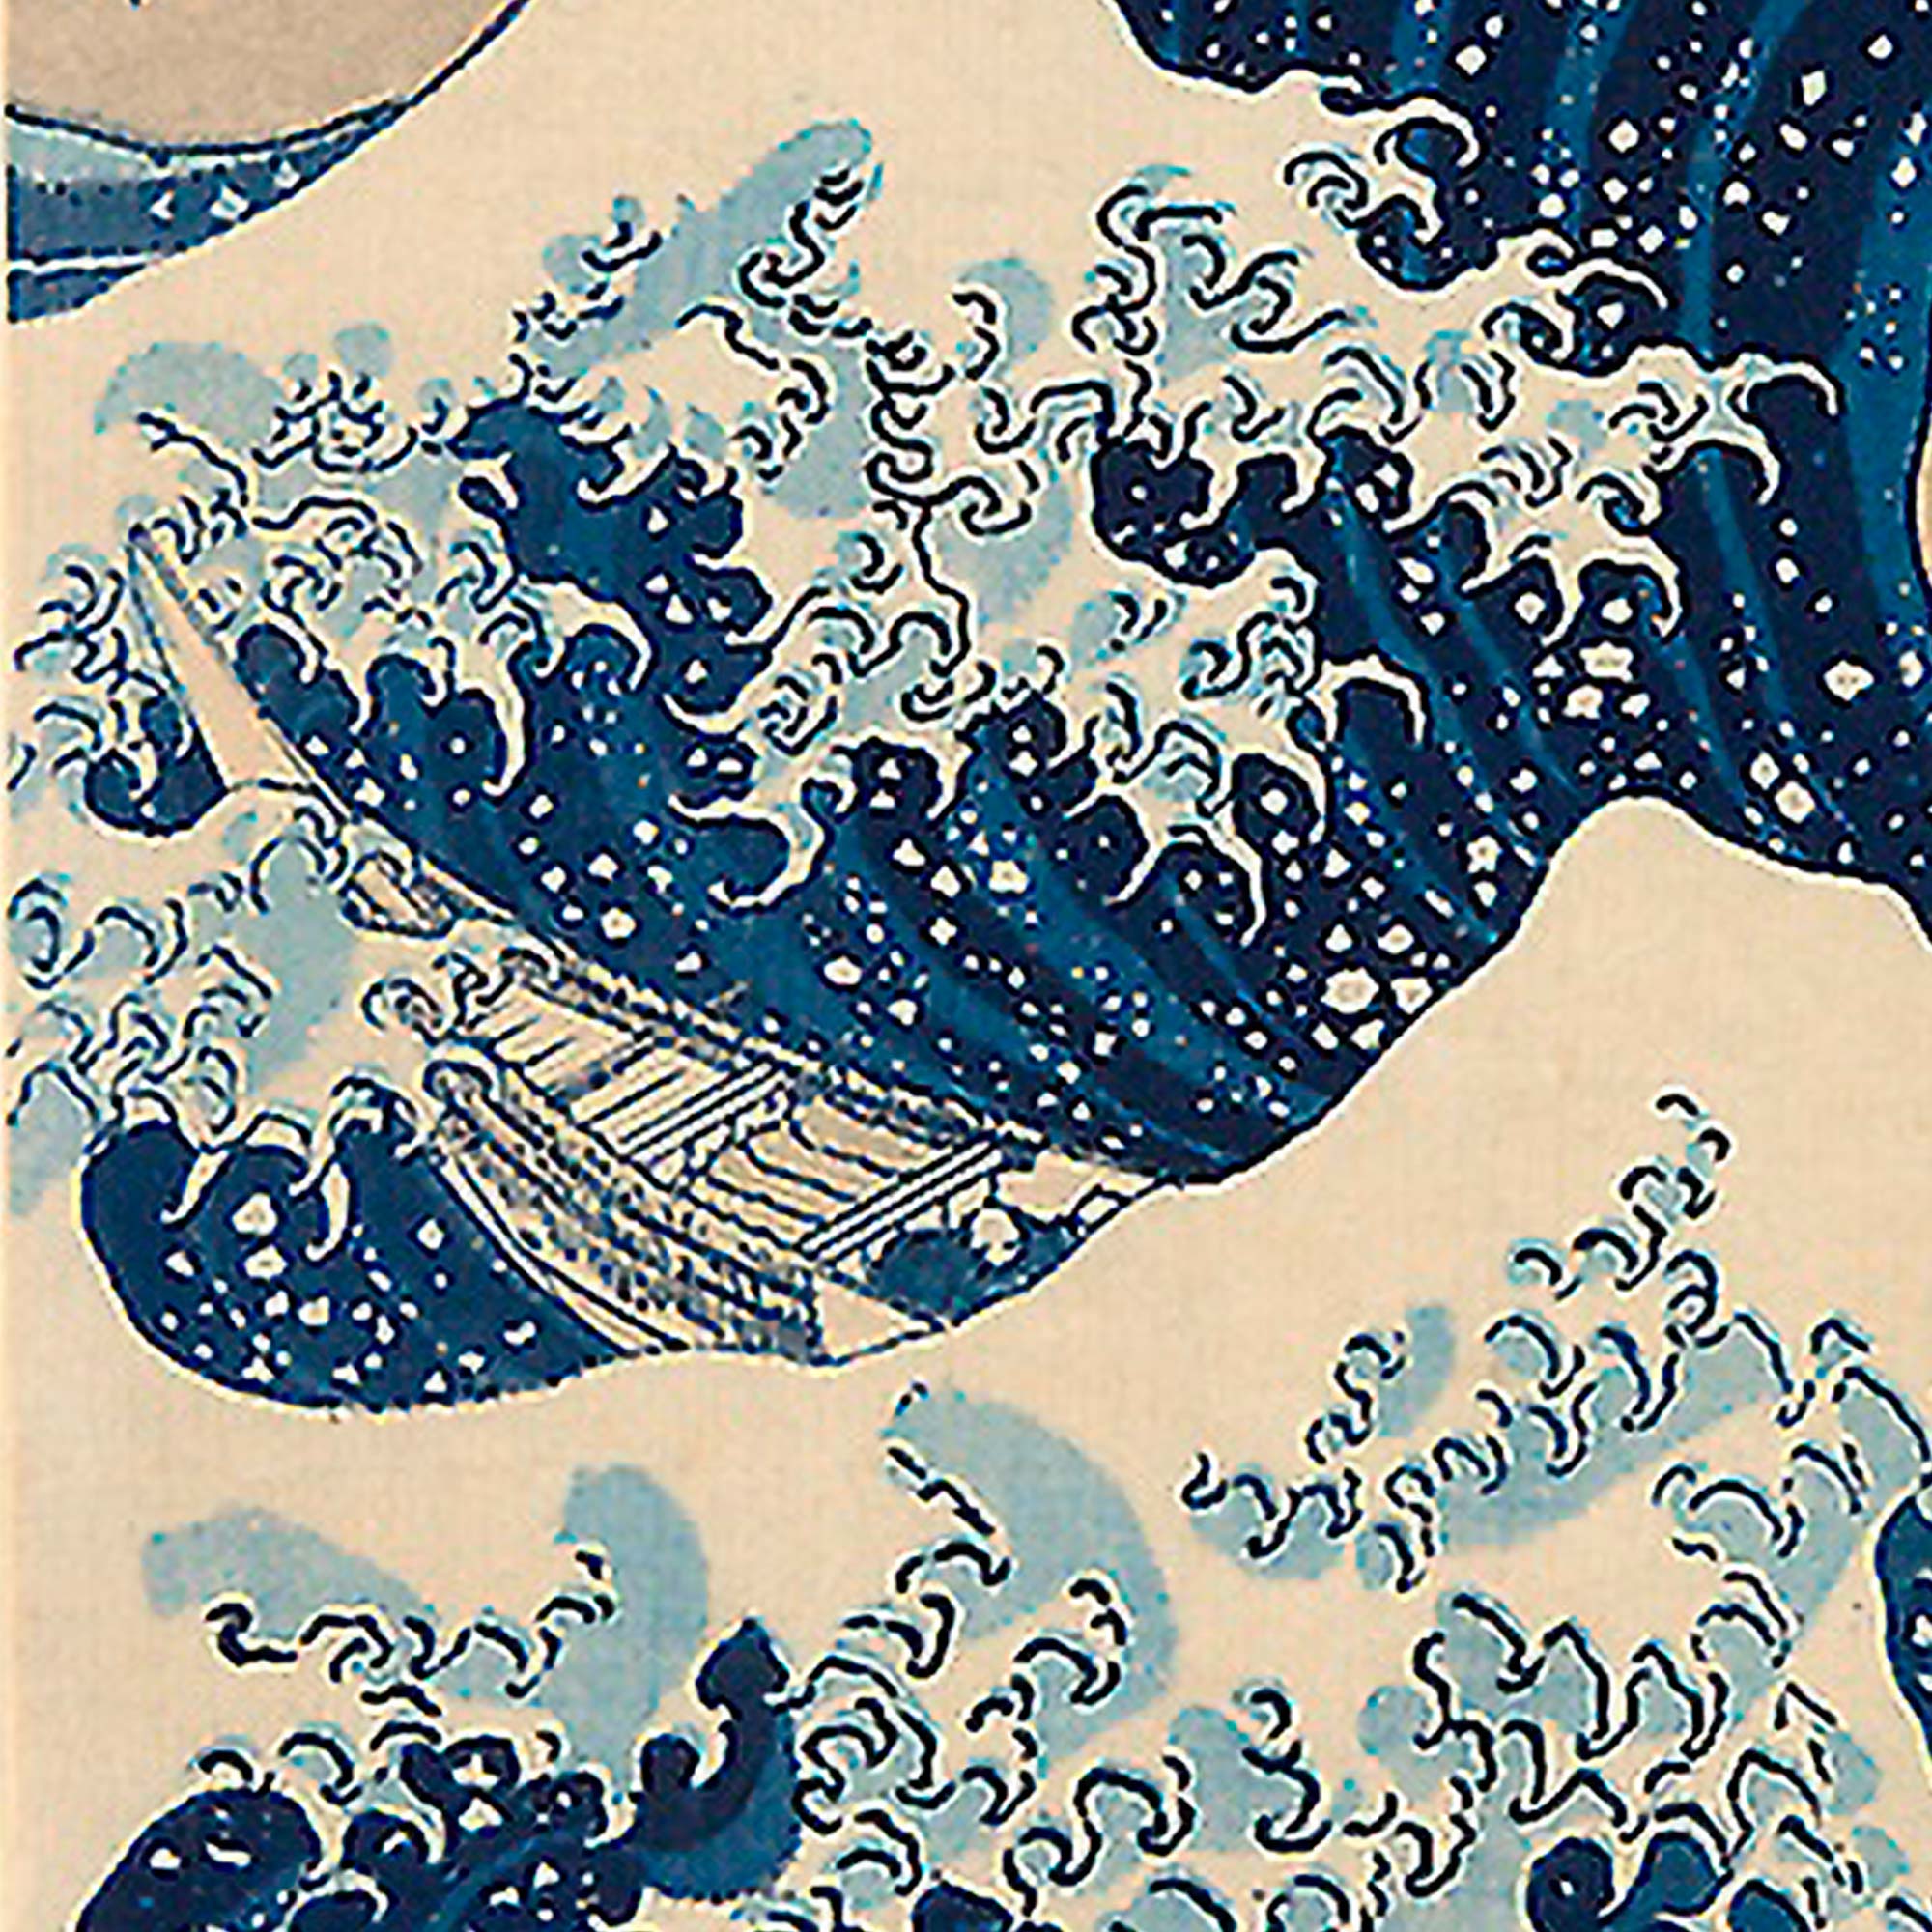 Under the Wave off Kanagawa